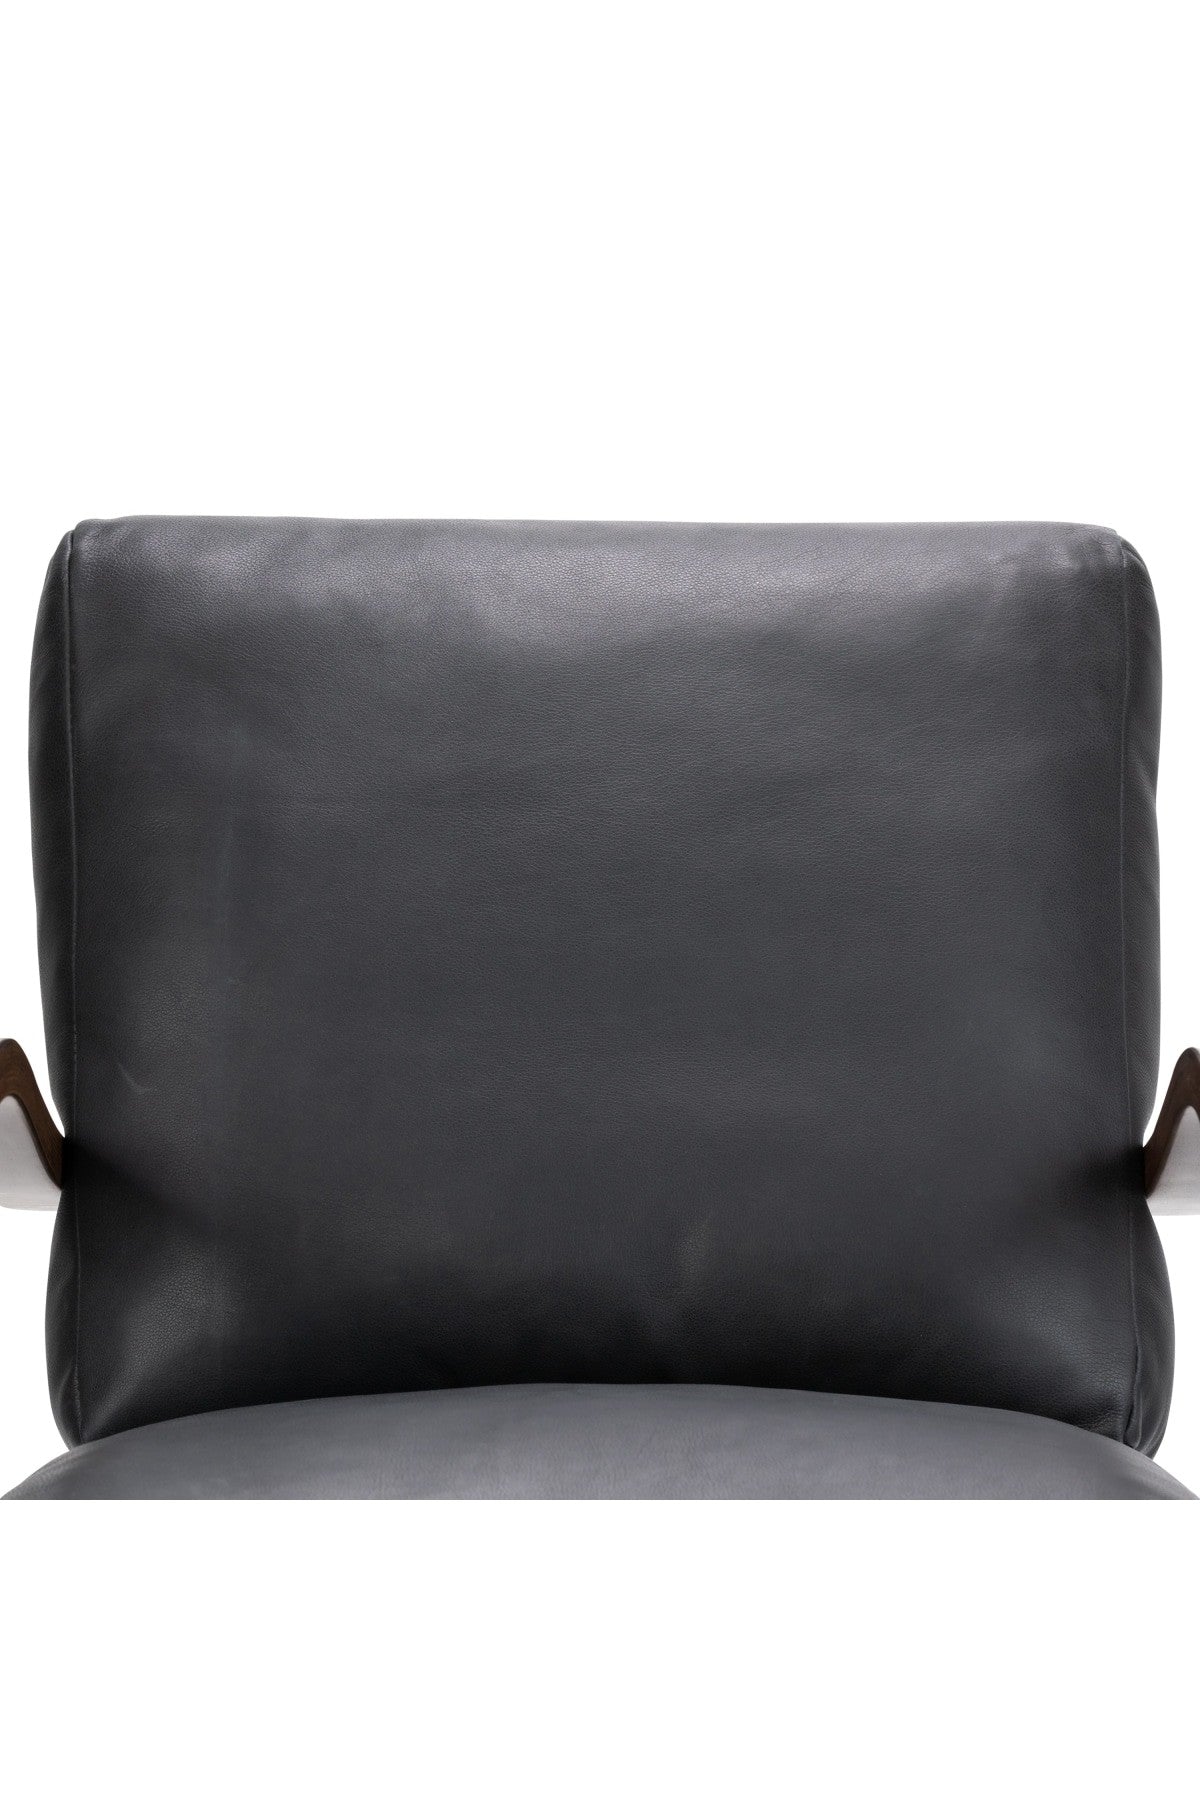 Paxton Chair - Brickhouse Black